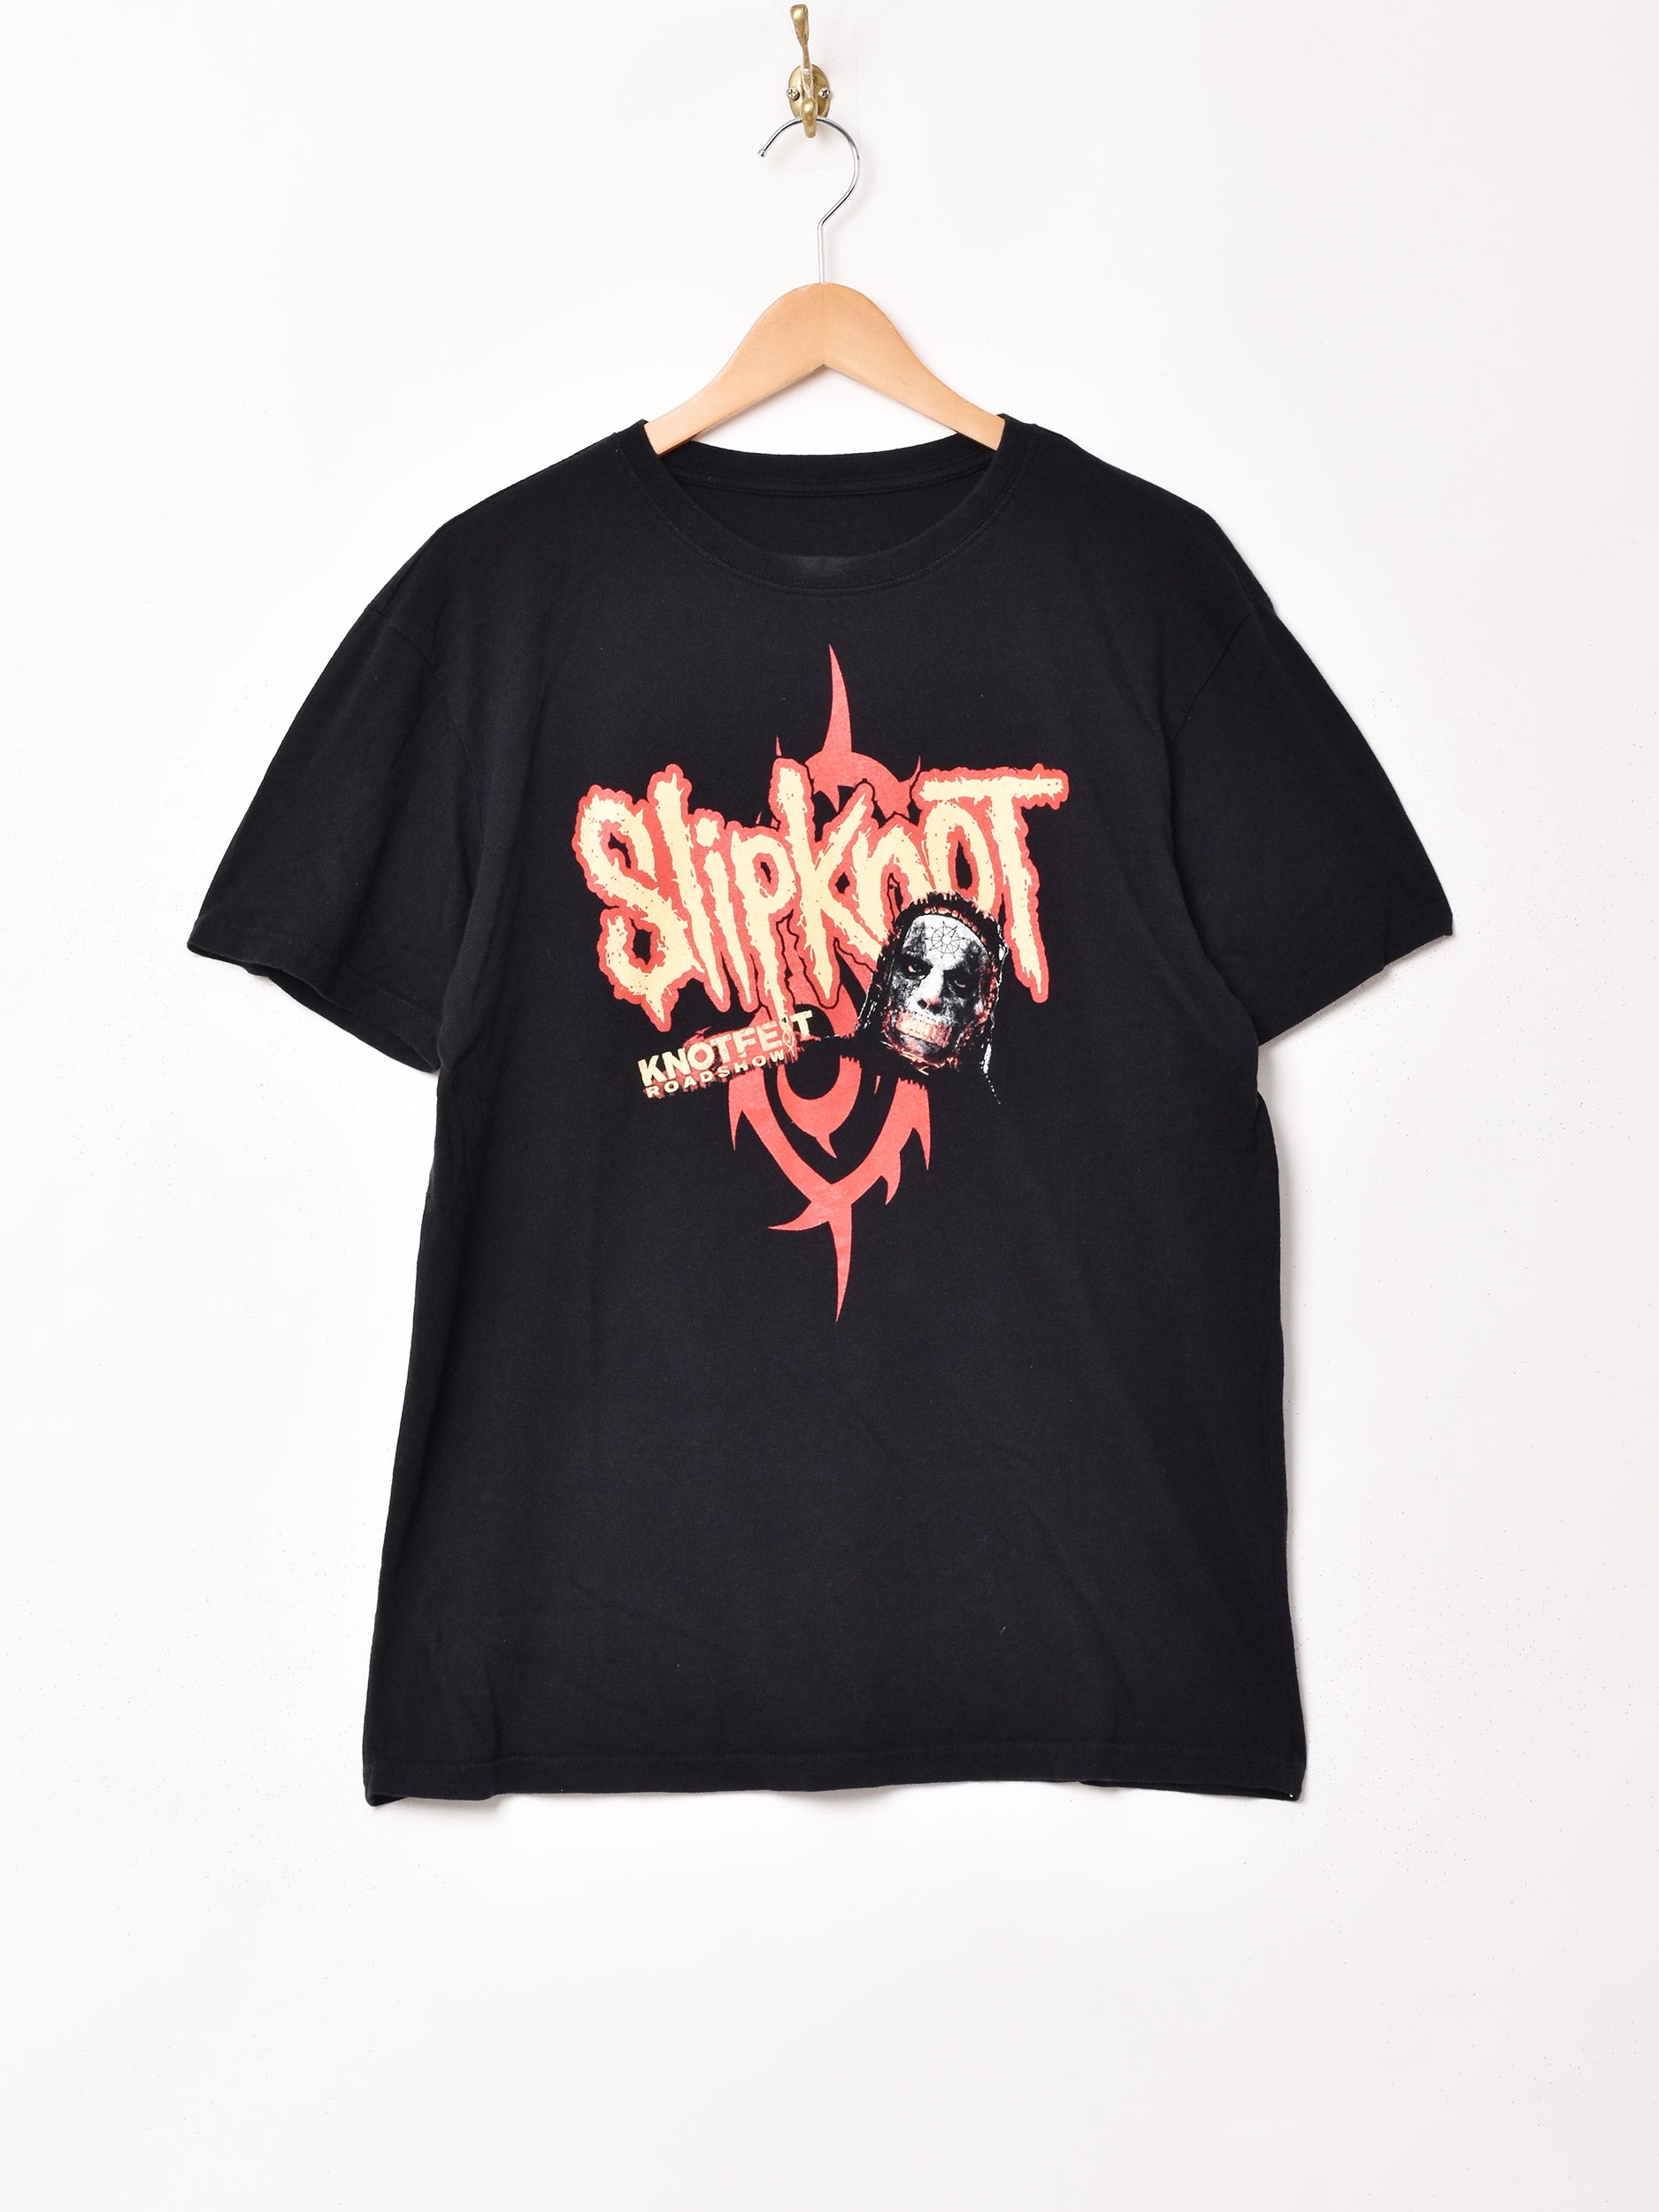 SlipknoT 「KNOT FEST 2019」 バンドTシャツ – 古着屋Top of the 